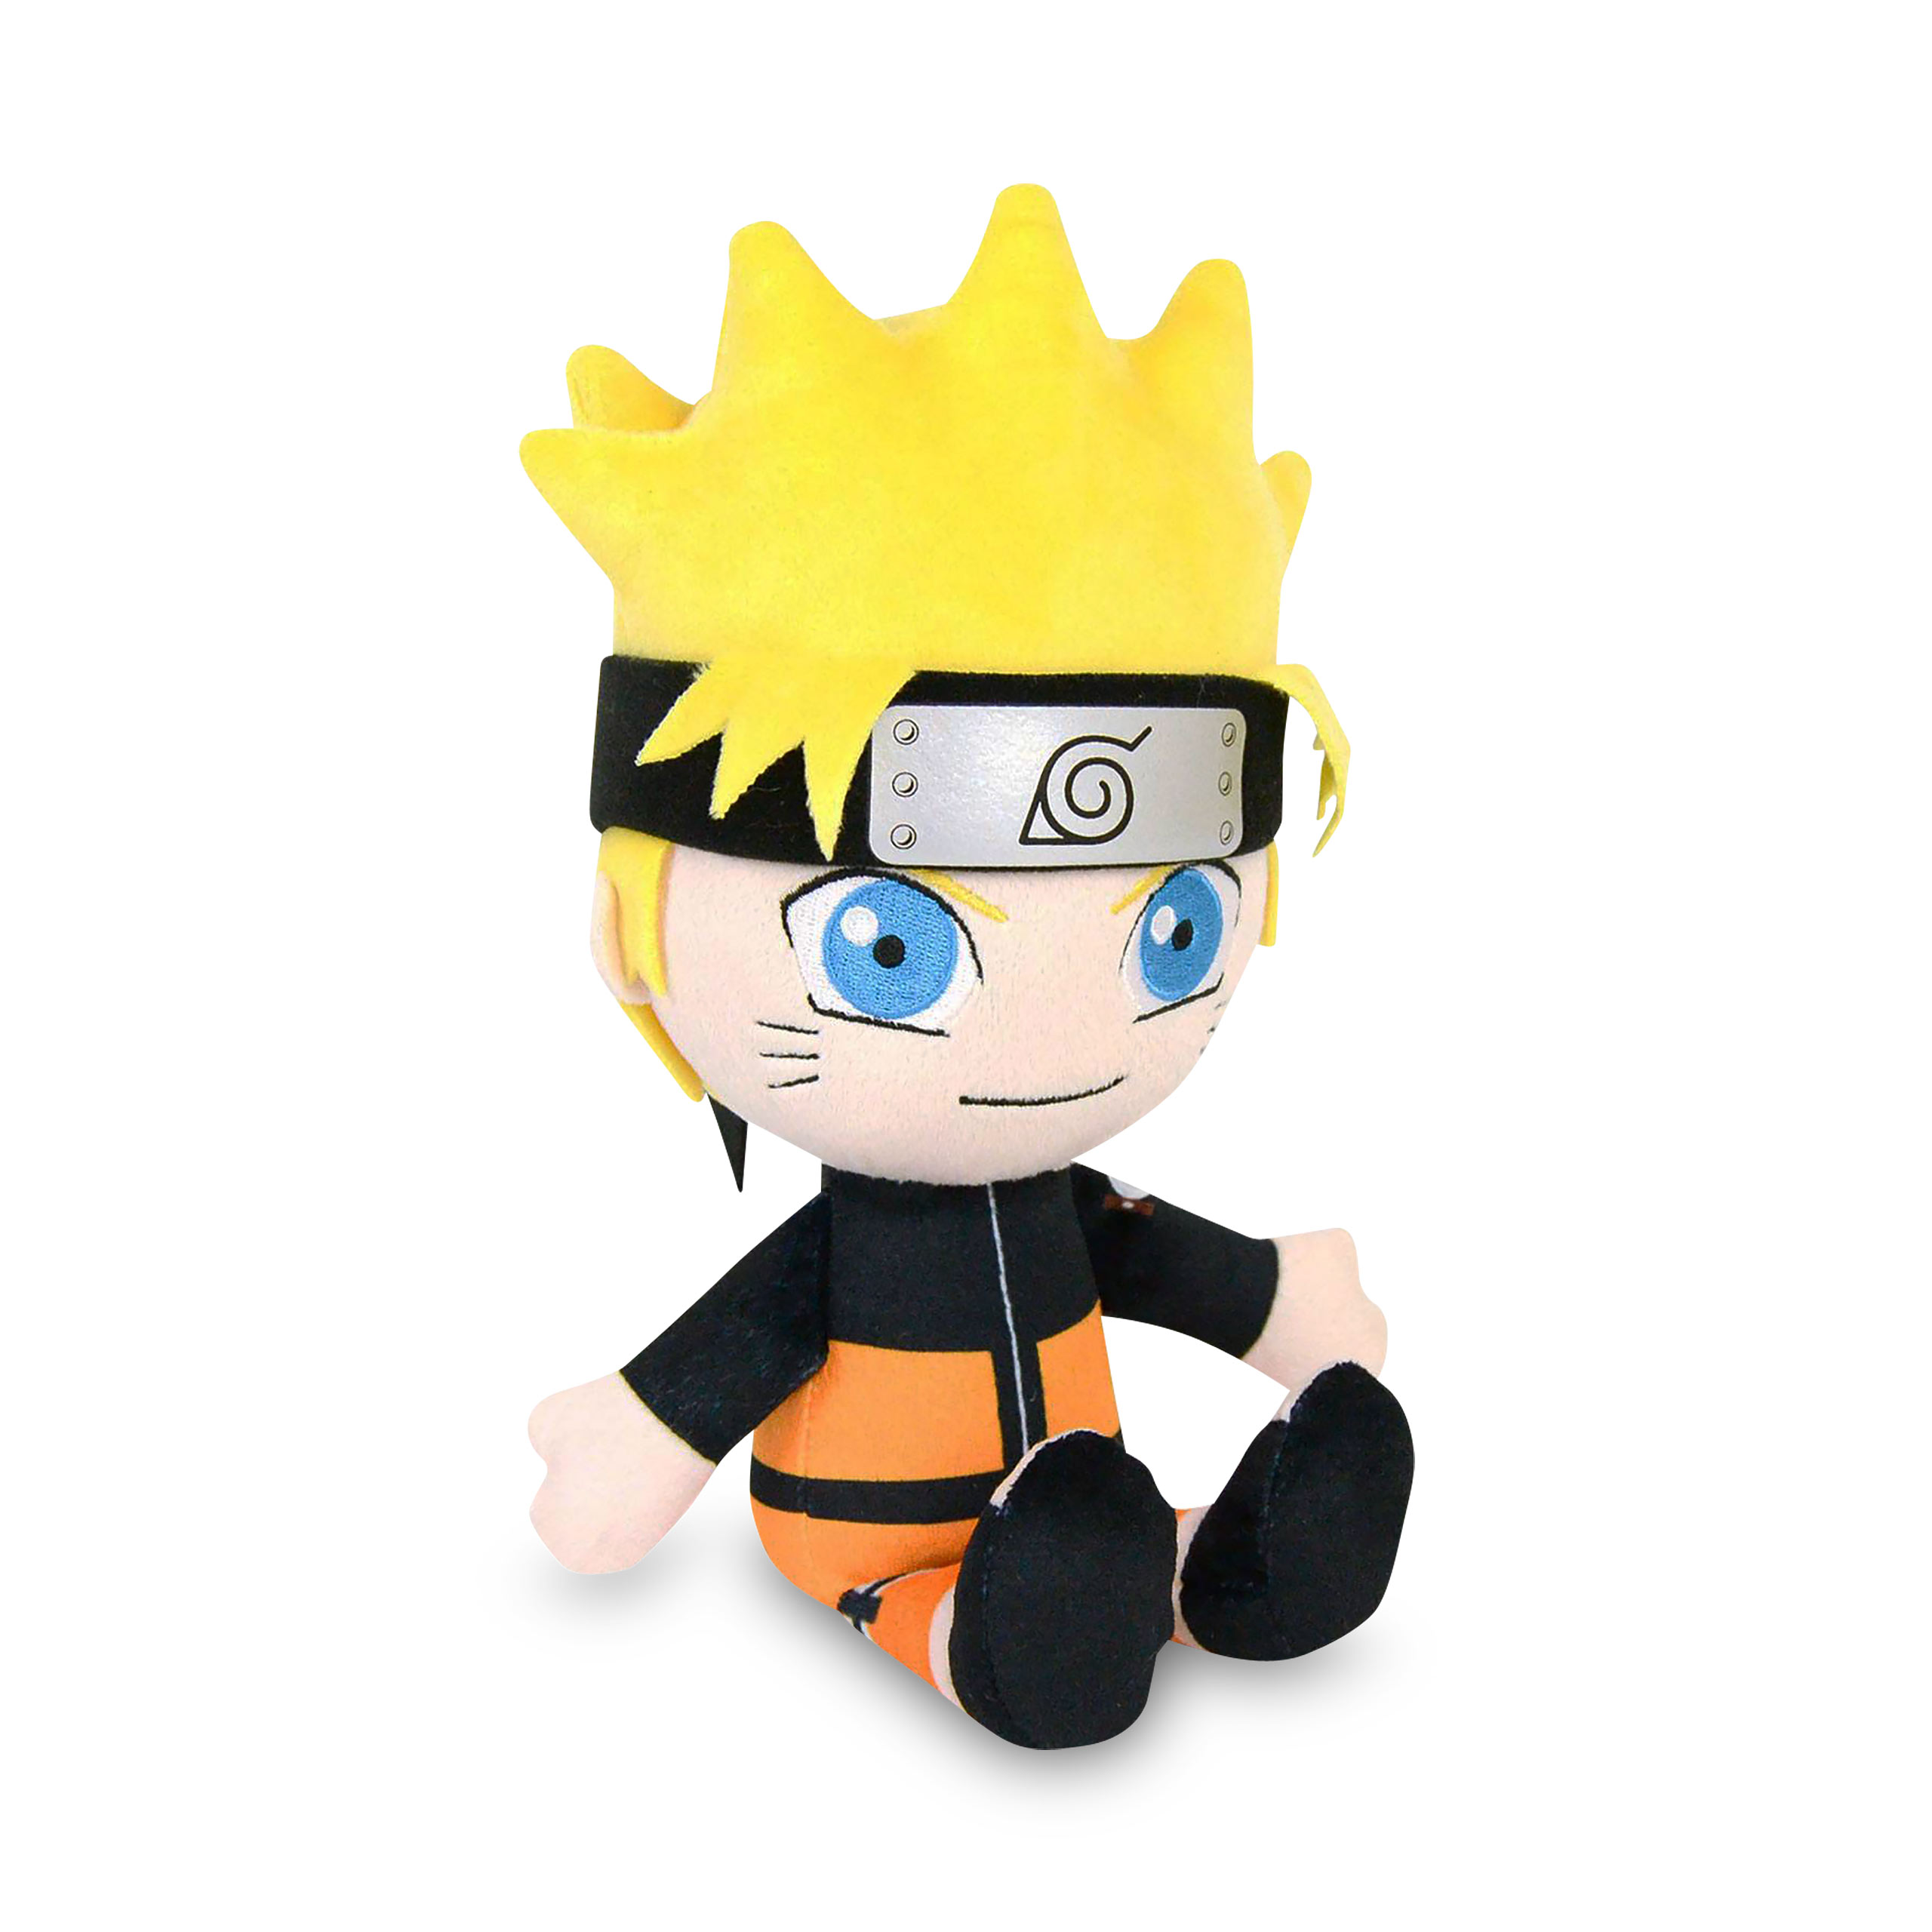 Naruto Shippuden - Naruto Uzumaki Plush Figure